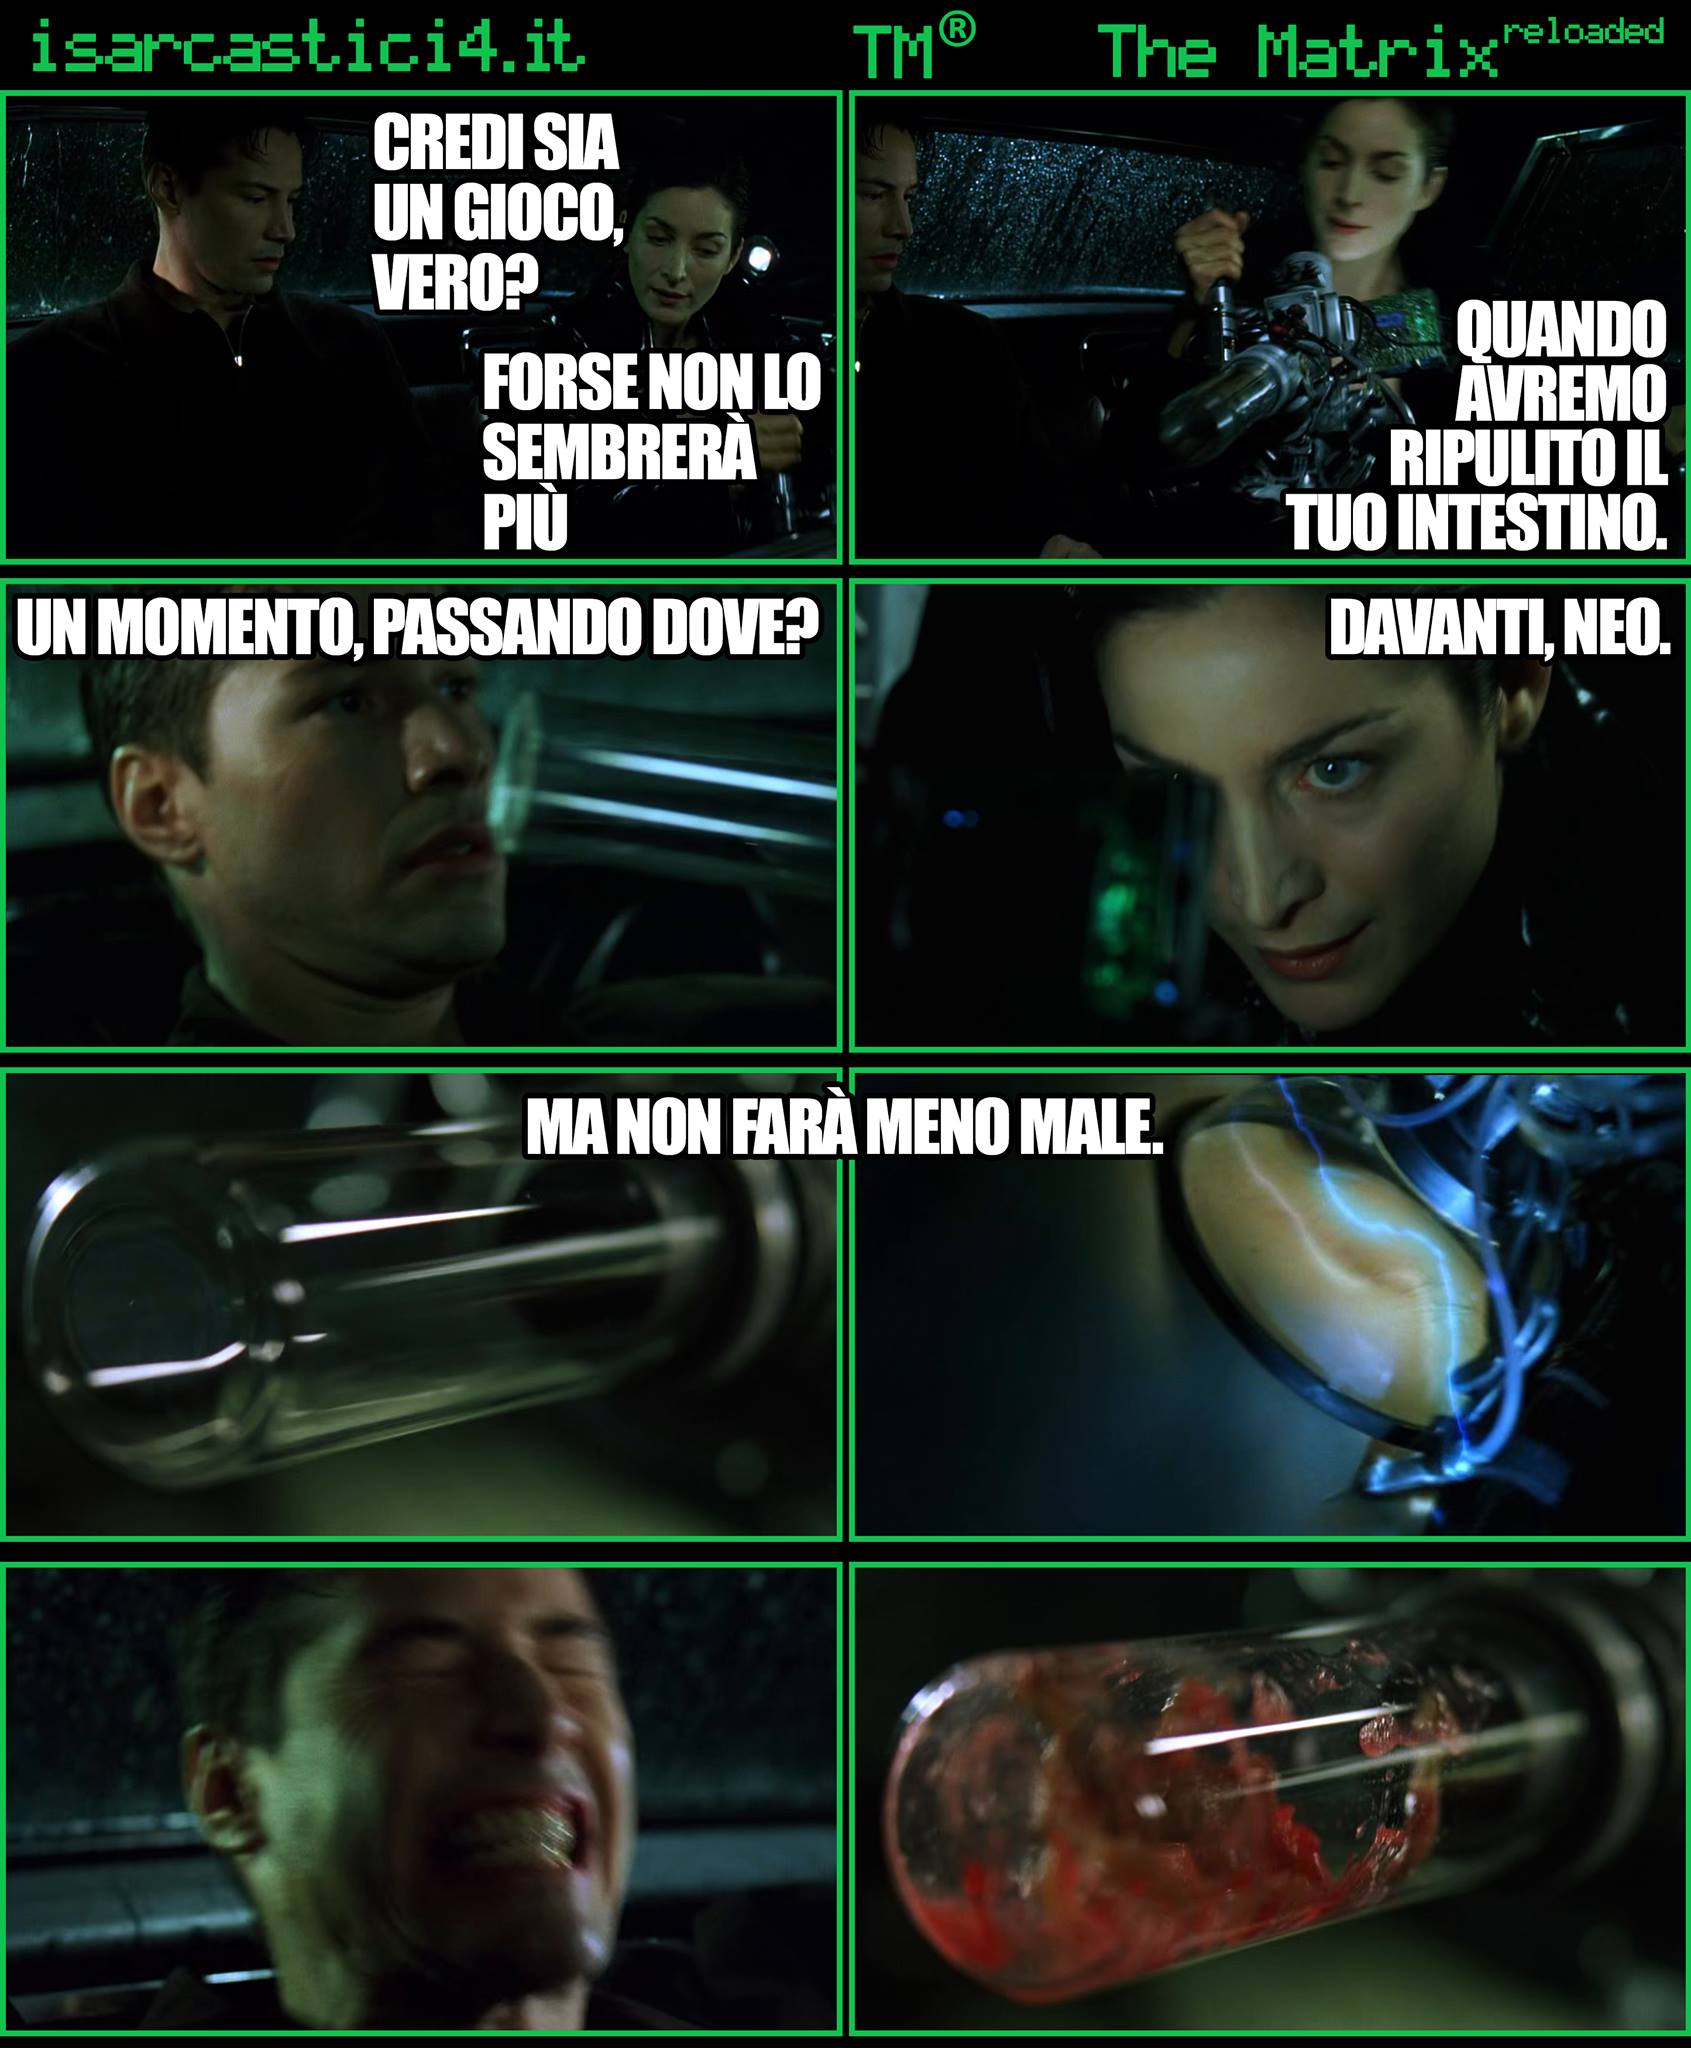 TMR - The Matrix Reloaded - La parodia a fumetti di Matrix